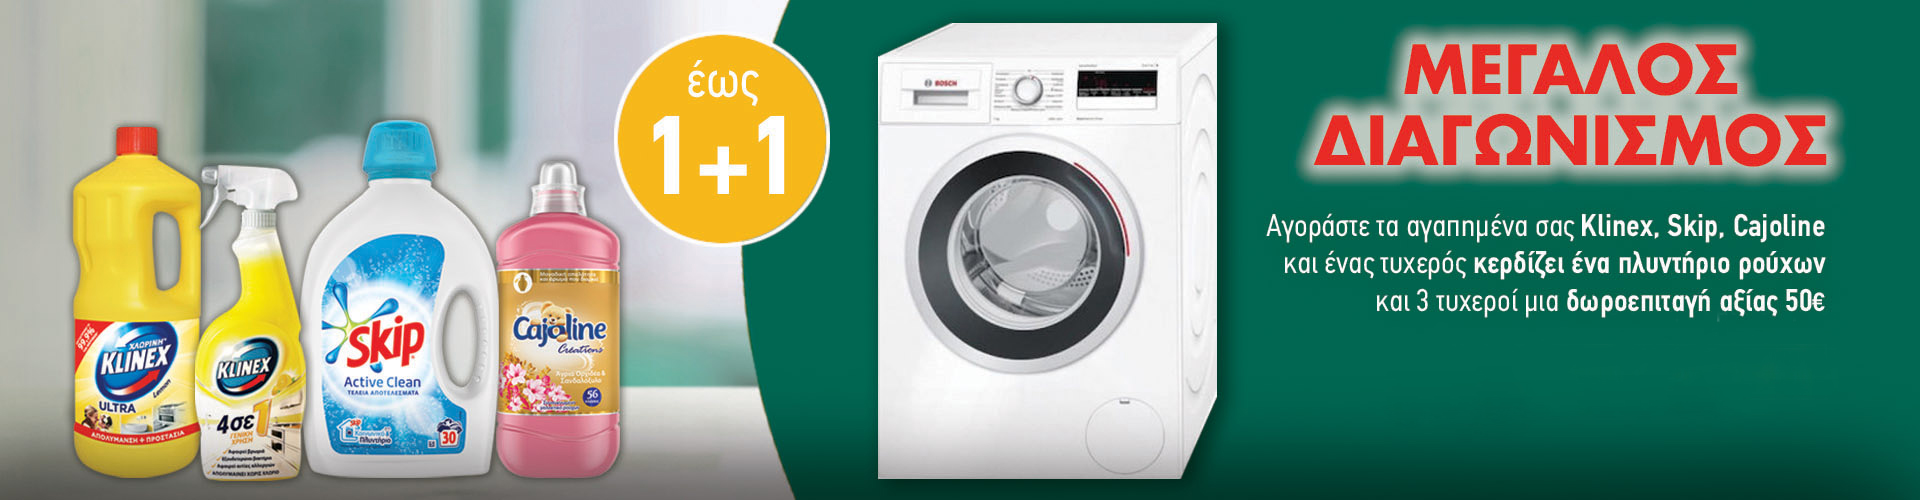 Κλήρωση για πλυντήριο ρούχων και δωροεπιταγές e-Fresh.gr αξίας 50€